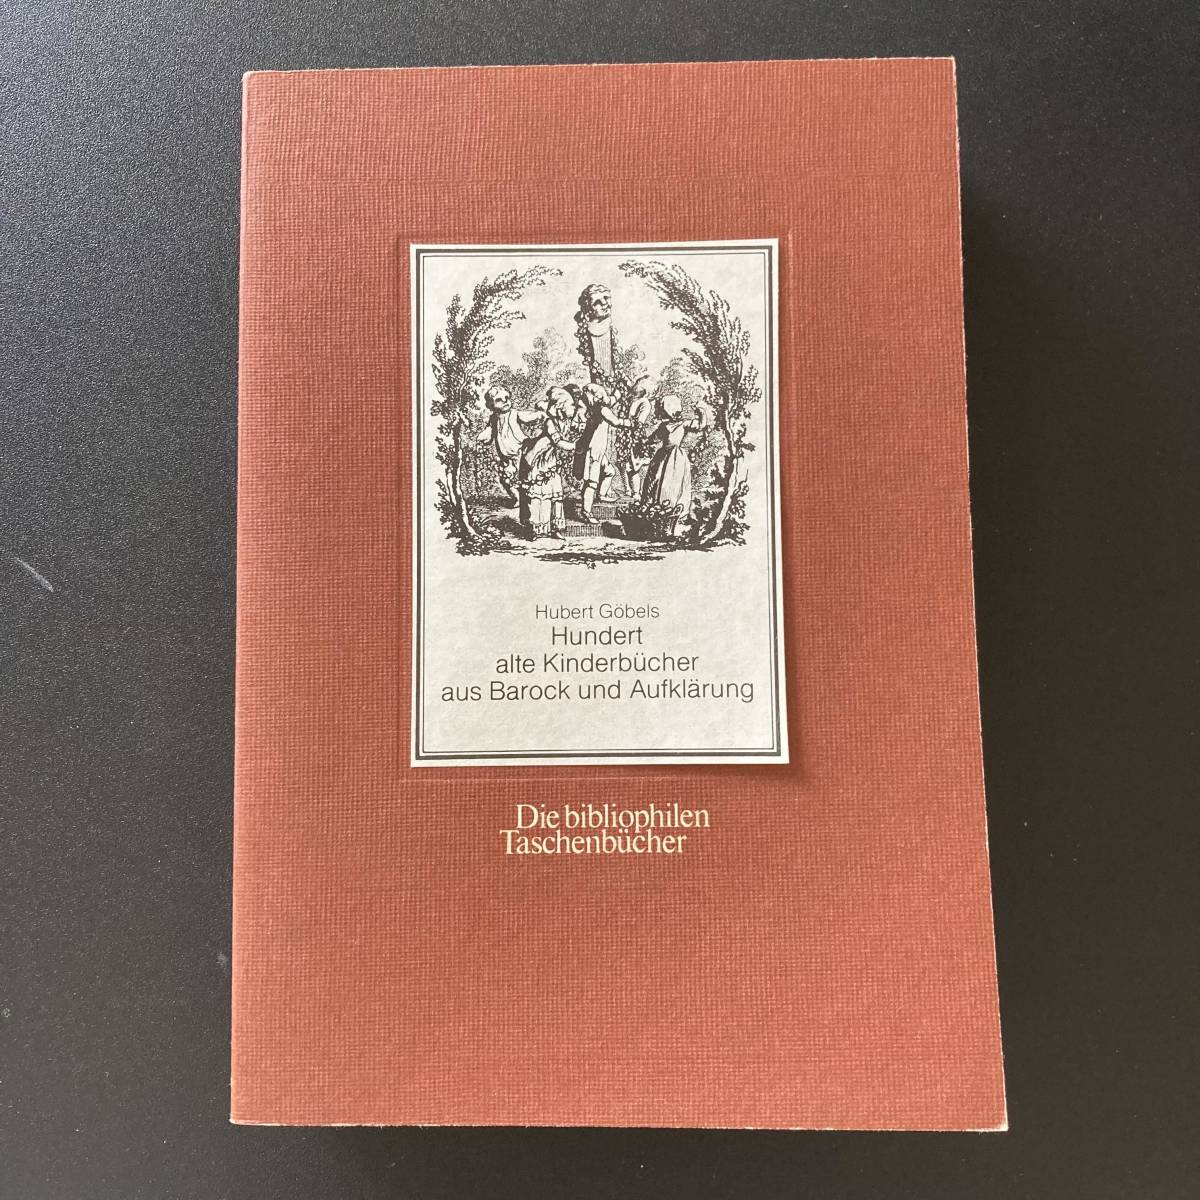 Hundert alte Kinderbucher aus Barock und Aufklarung (Die bibliophilen Taschenbucher) / Hubert Gbels ( work )